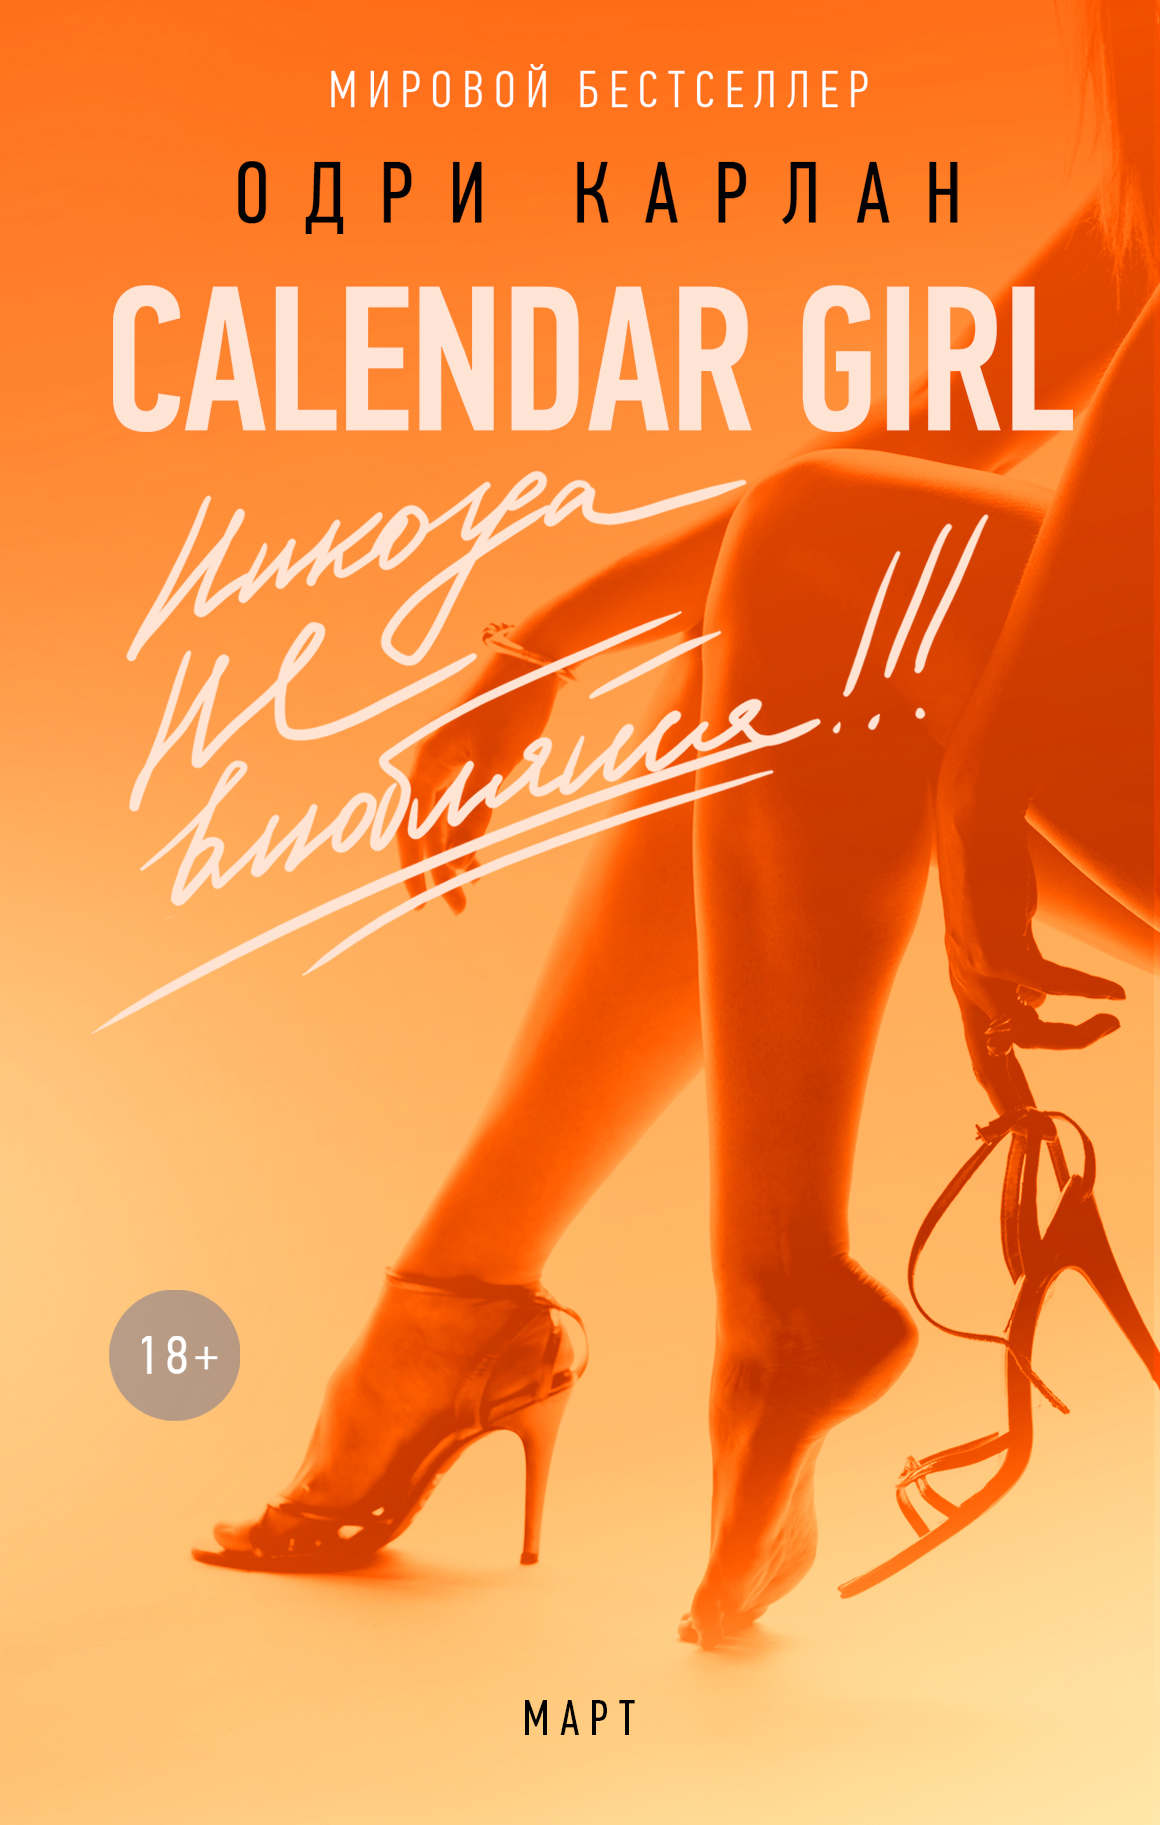 Calendar Girl.Никогда не влюбляйся! Март